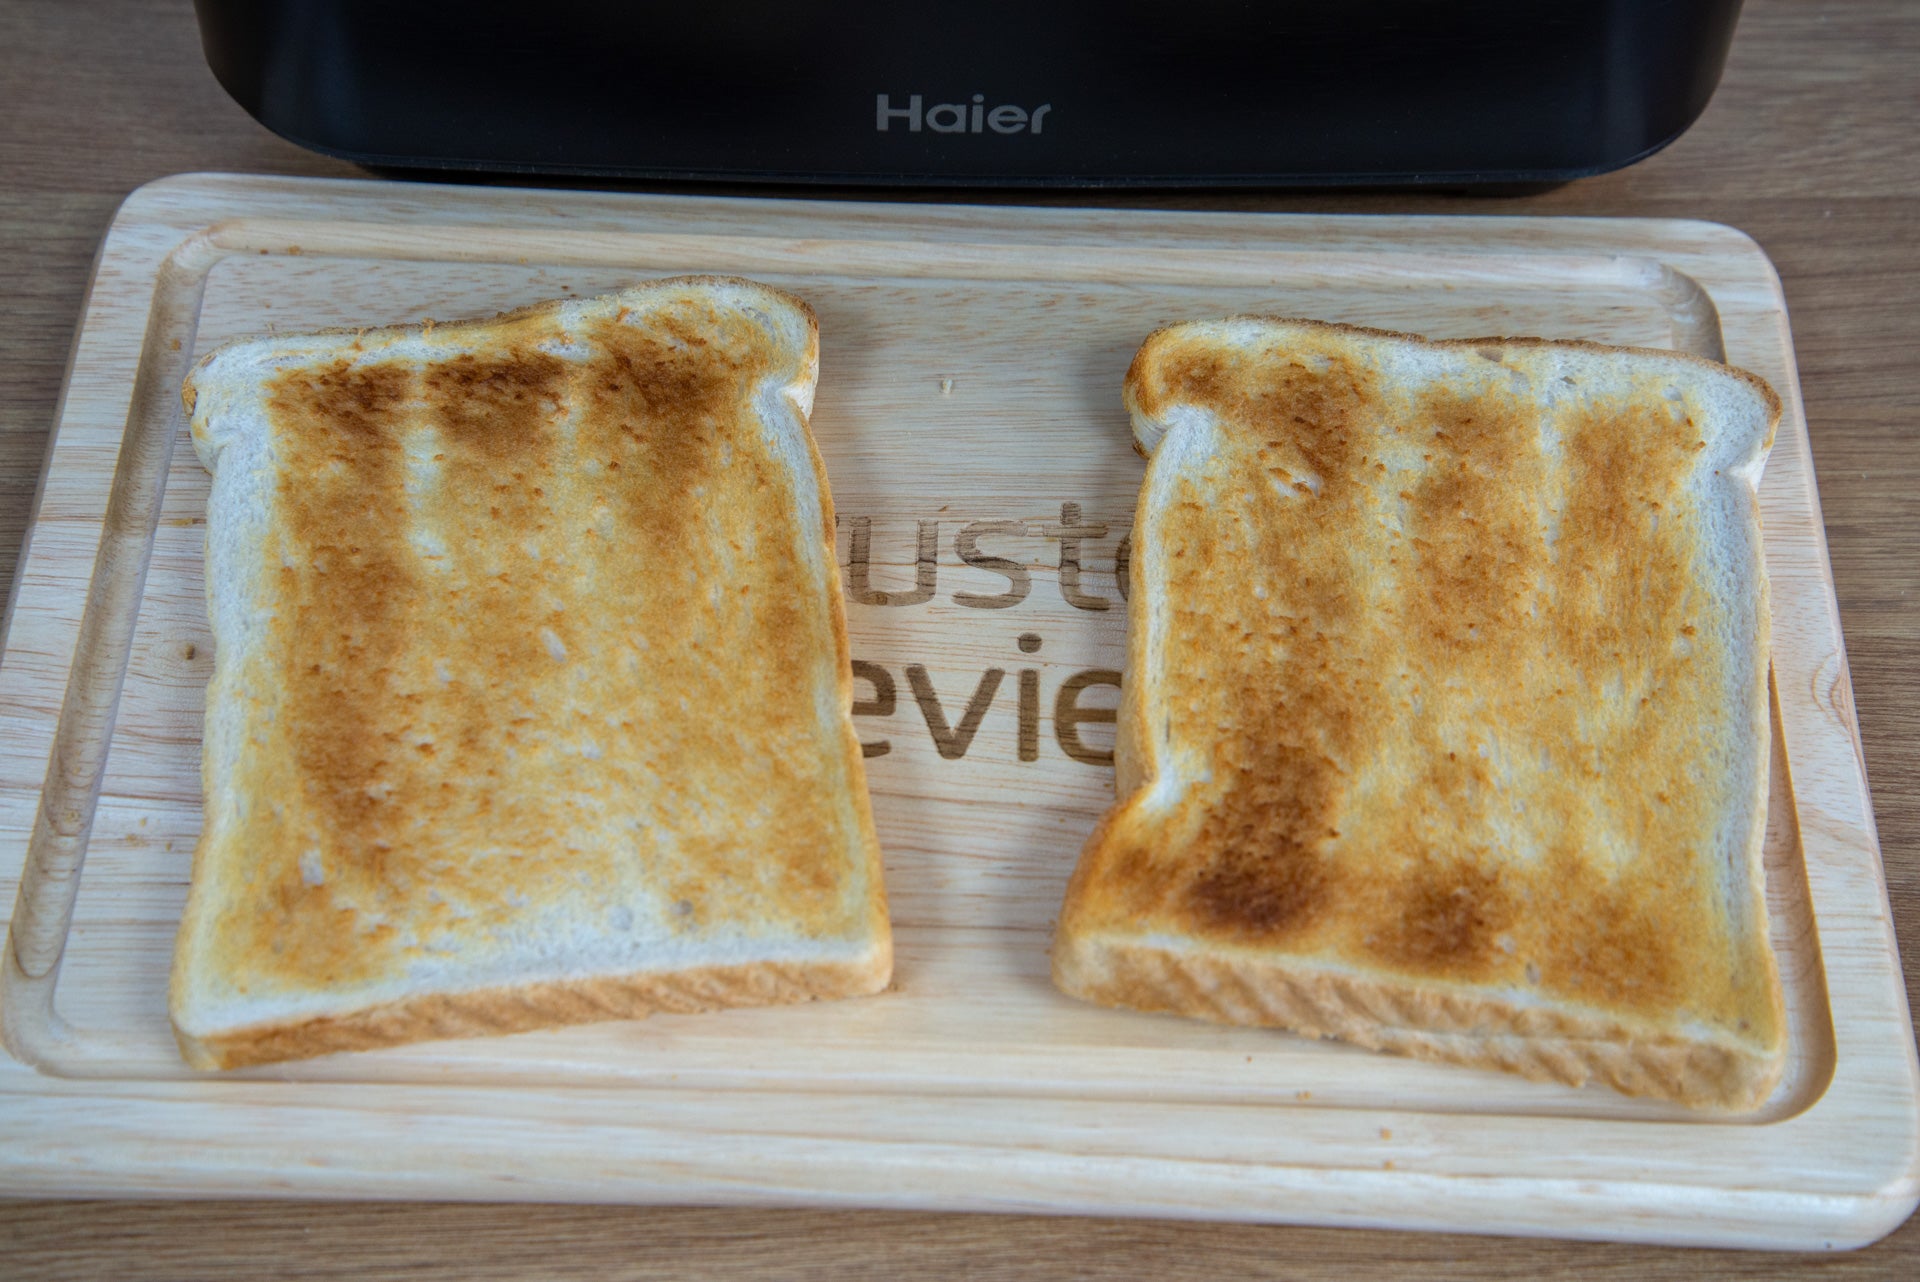 Haier I-Master Series 5 Toaster 2 Scheibentoastprobe 2